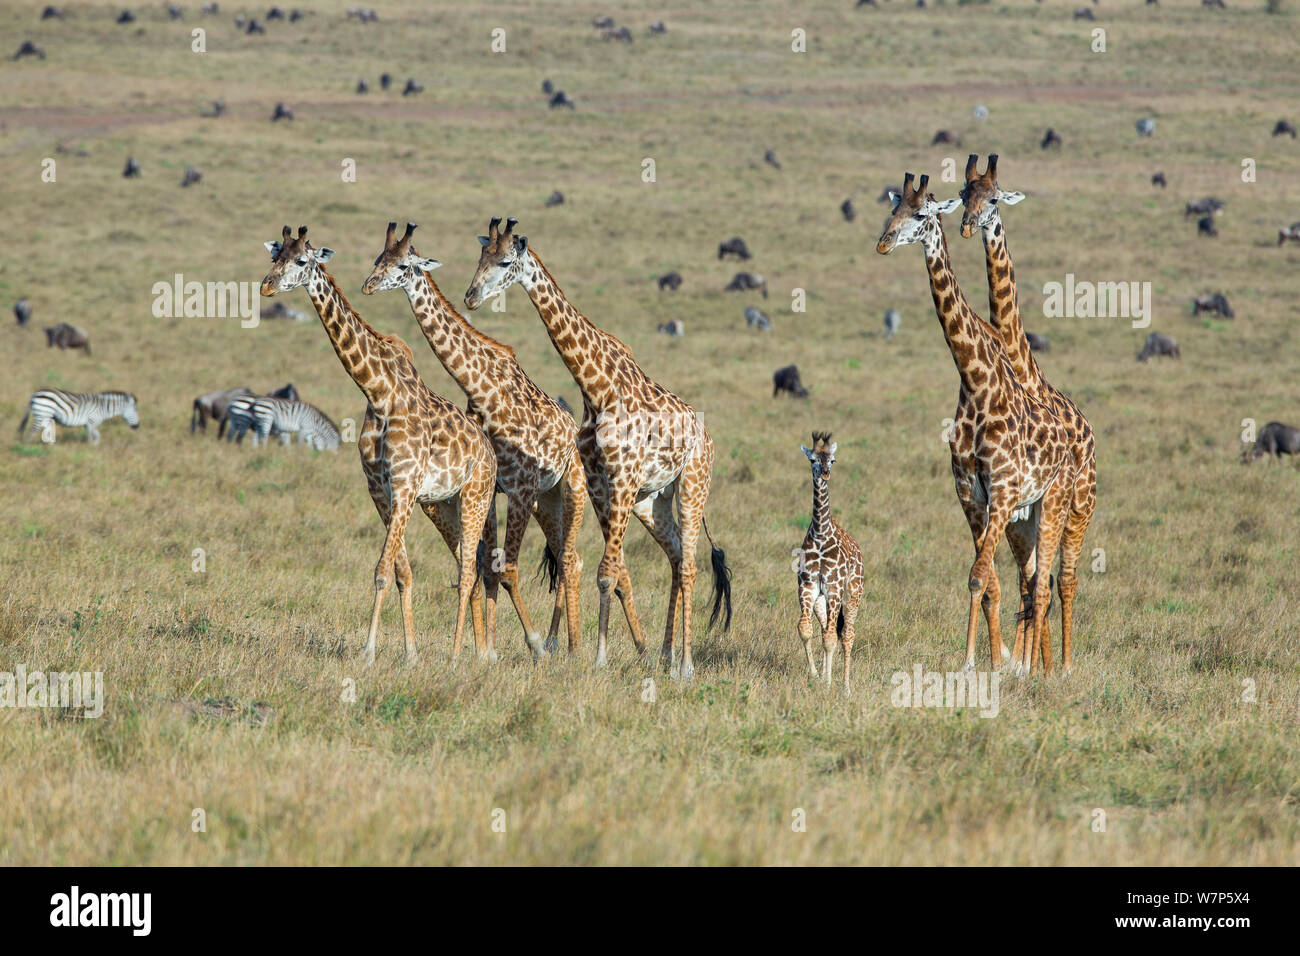 Masai jirafa (Giraffa cameleopardalis tippelskirchi), rebaño con el bebé y diversos mamíferos llanos en segundo plano. Game Reserve Masai-Mara, Kenya. Foto de stock